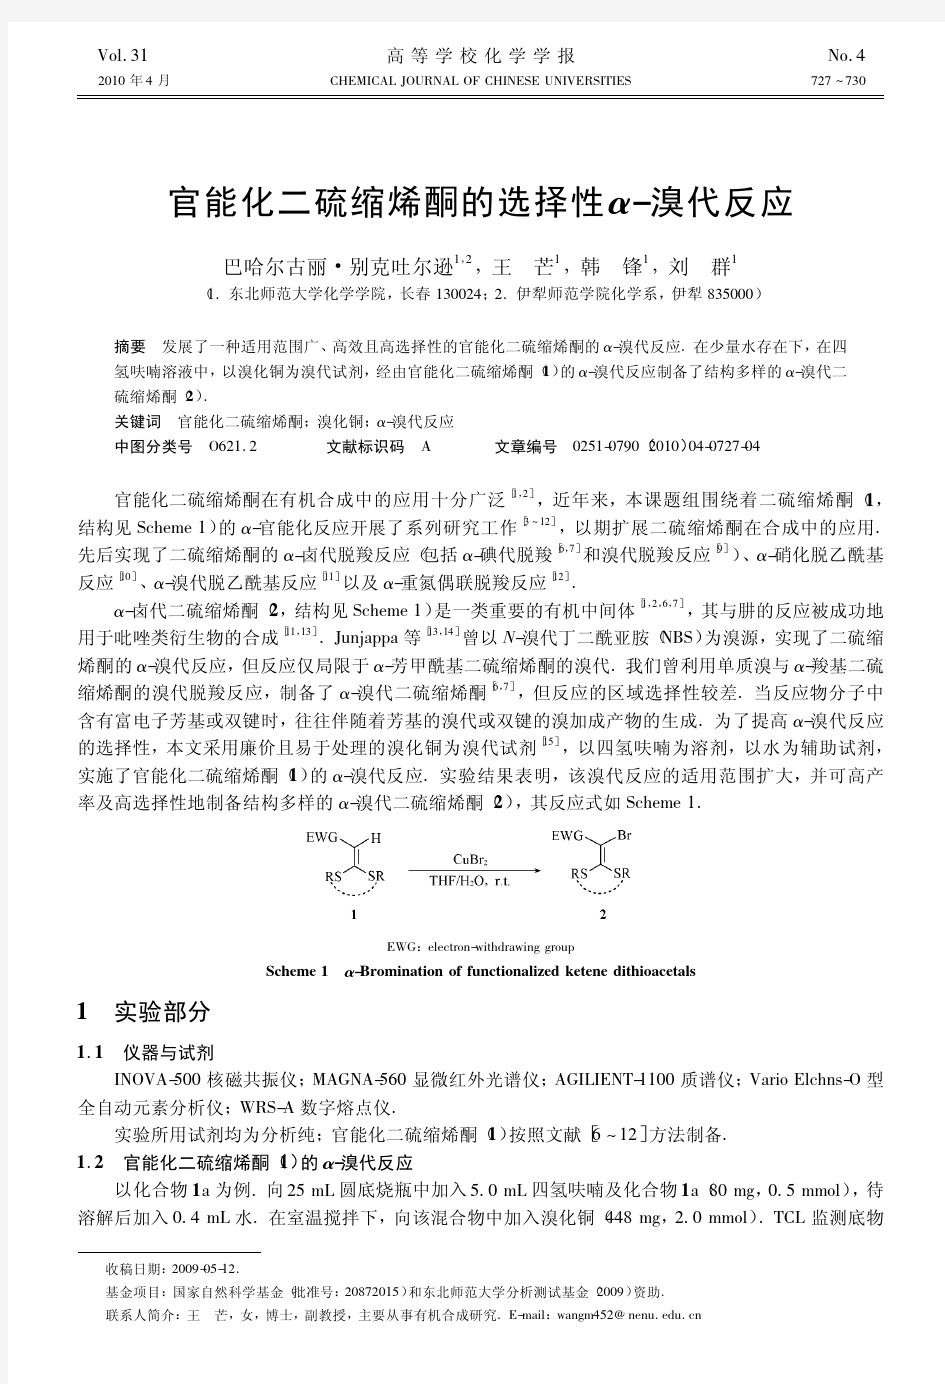 官能化二硫缩烯酮的选择性_溴代反应